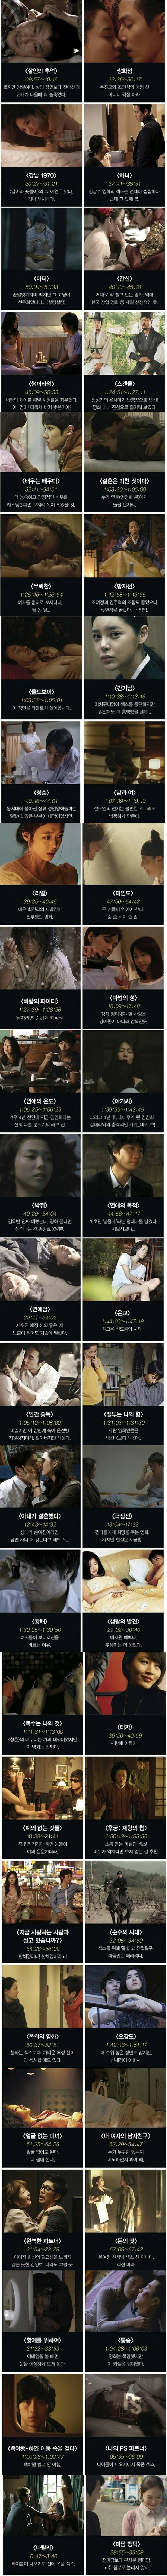 한국영화 에로신 50선.jpg | 웹진 인벤 - 인벤